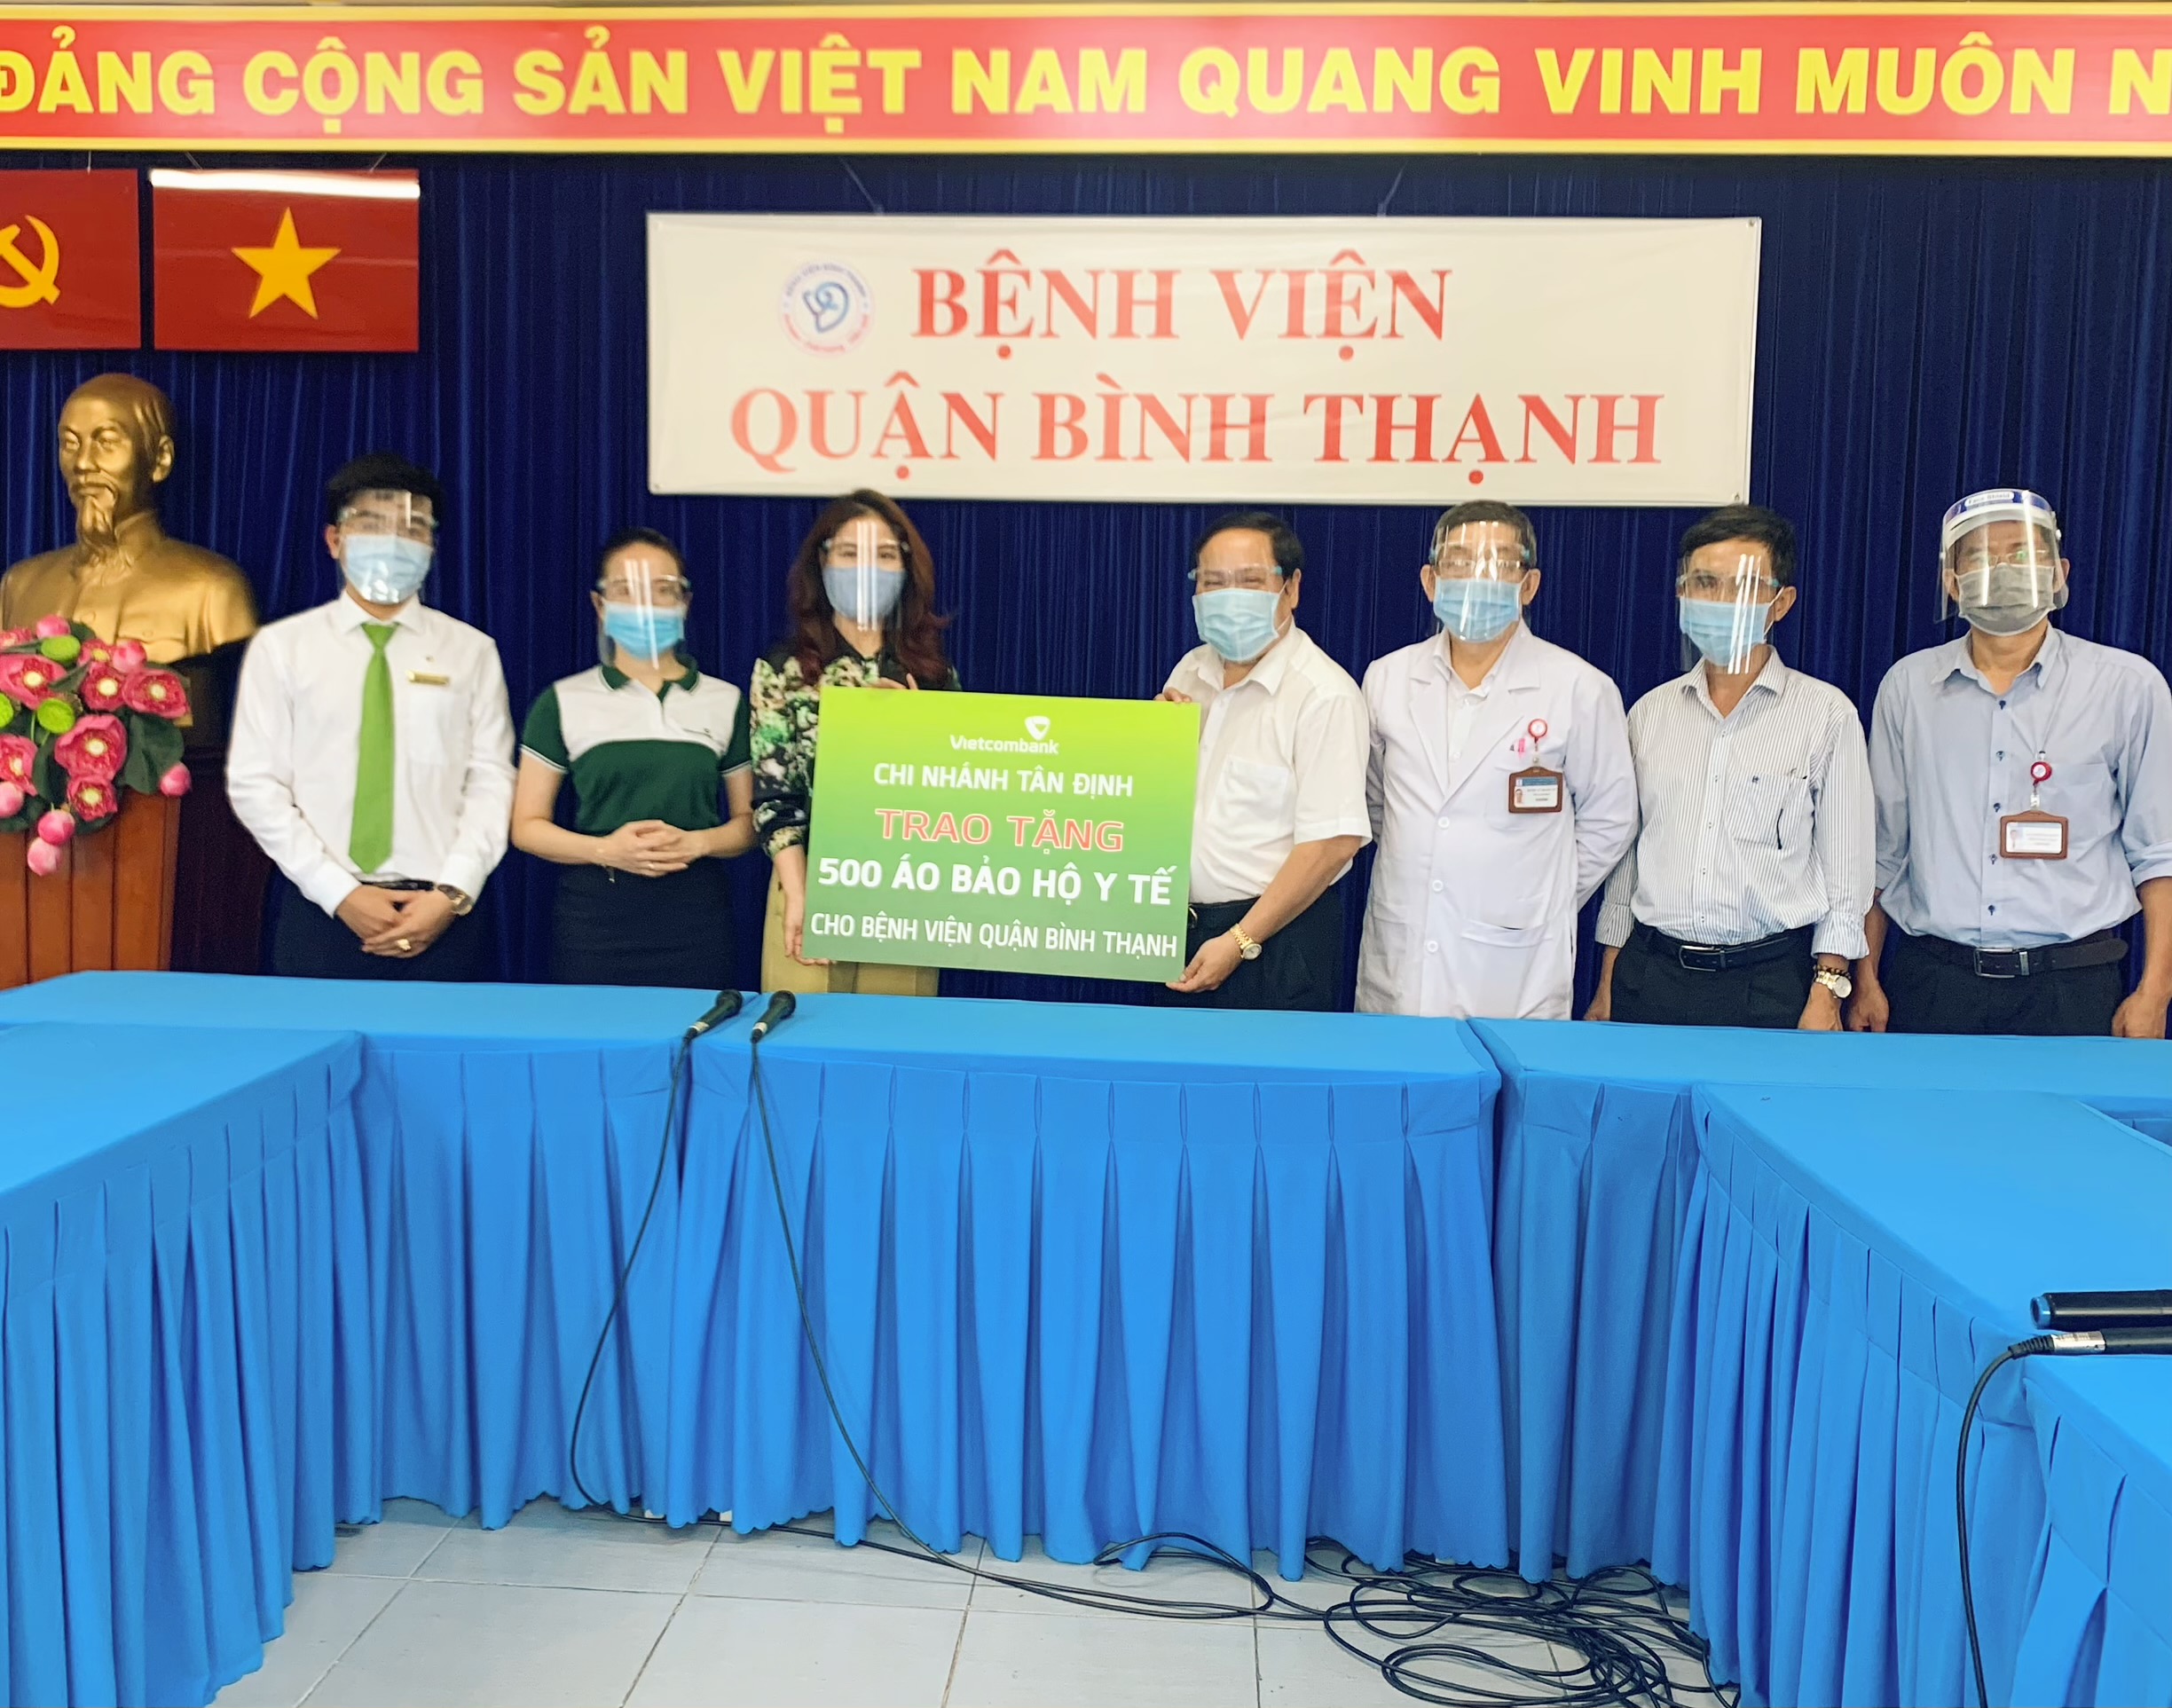 Vietcombank Tân Định trao tặng 500 bộ bảo hộ y tế cho đội ngũ y bác sỹ tại bệnh viện quận Bình Thạnh 